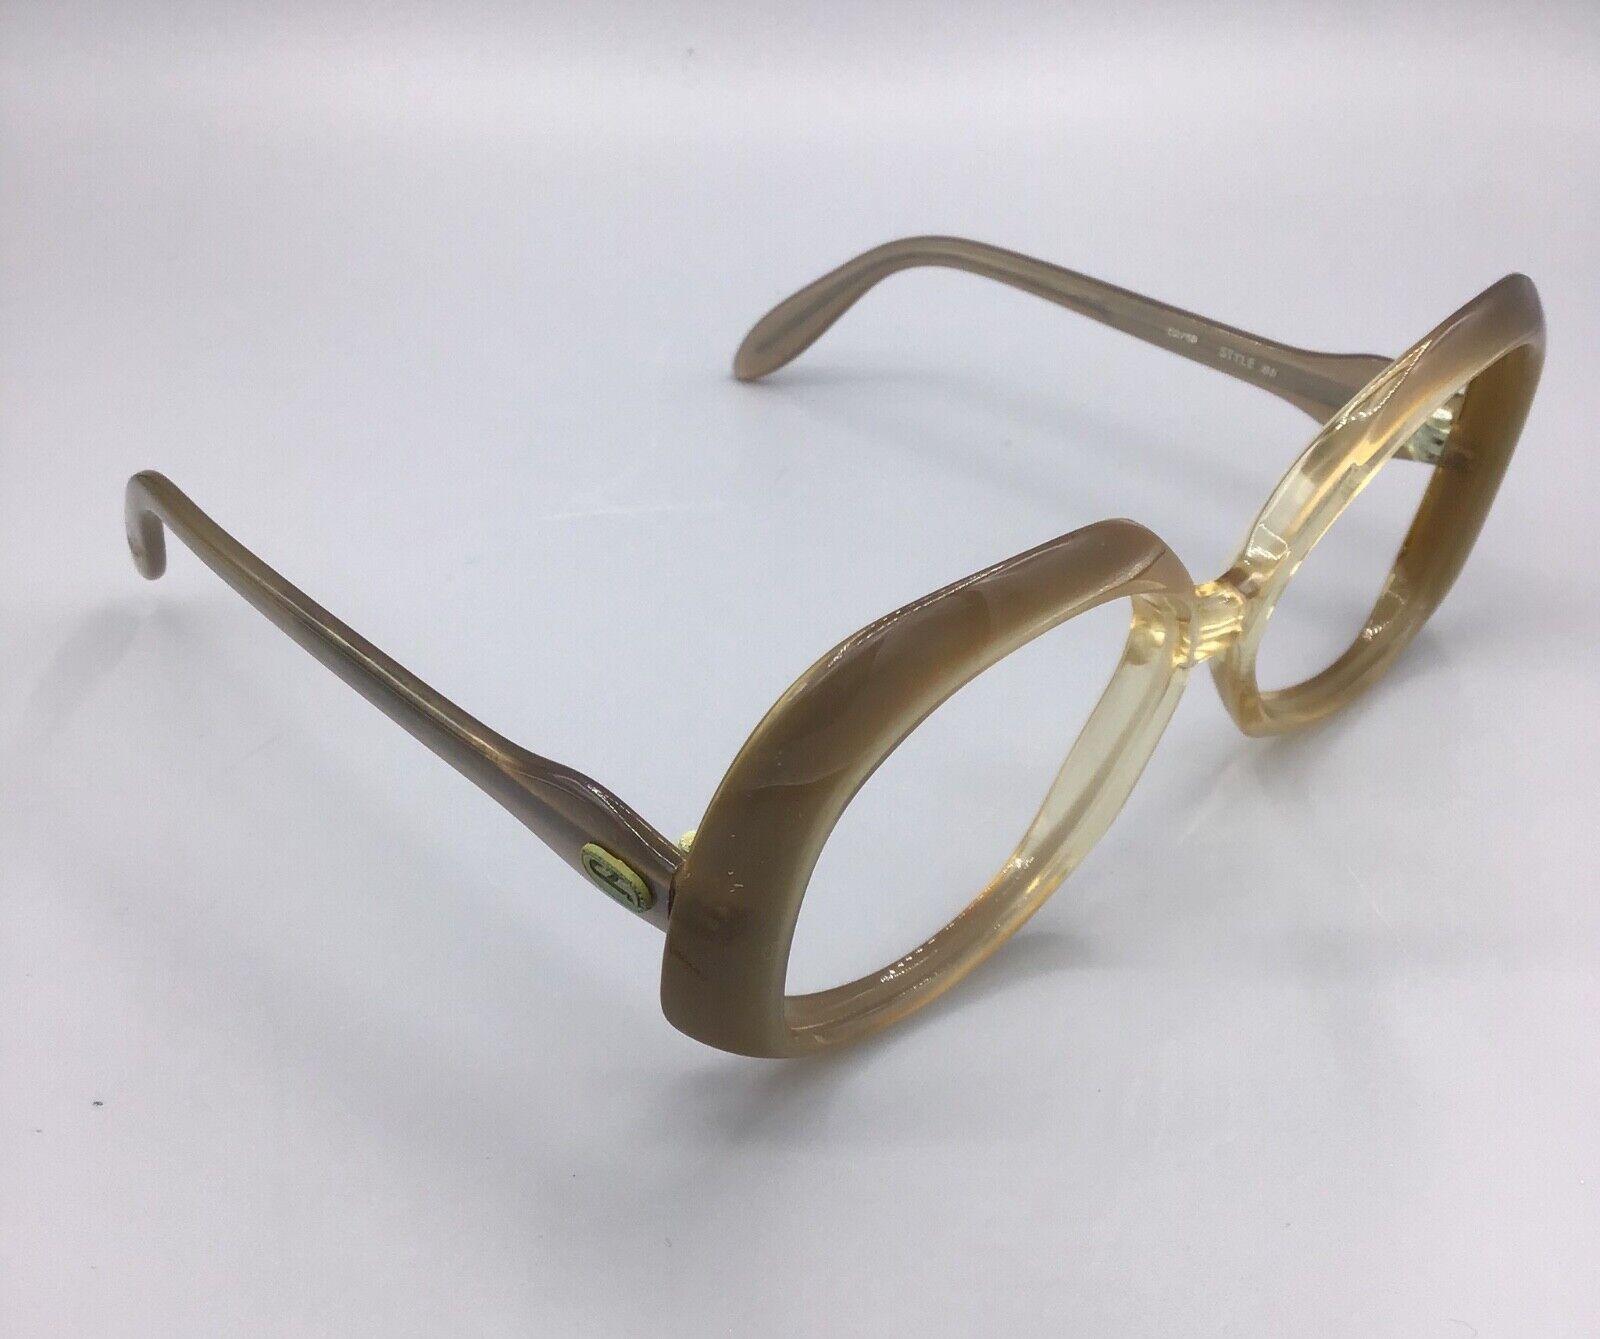 Jet Set occhiale vintage Eyewear brillen lunettes gafas